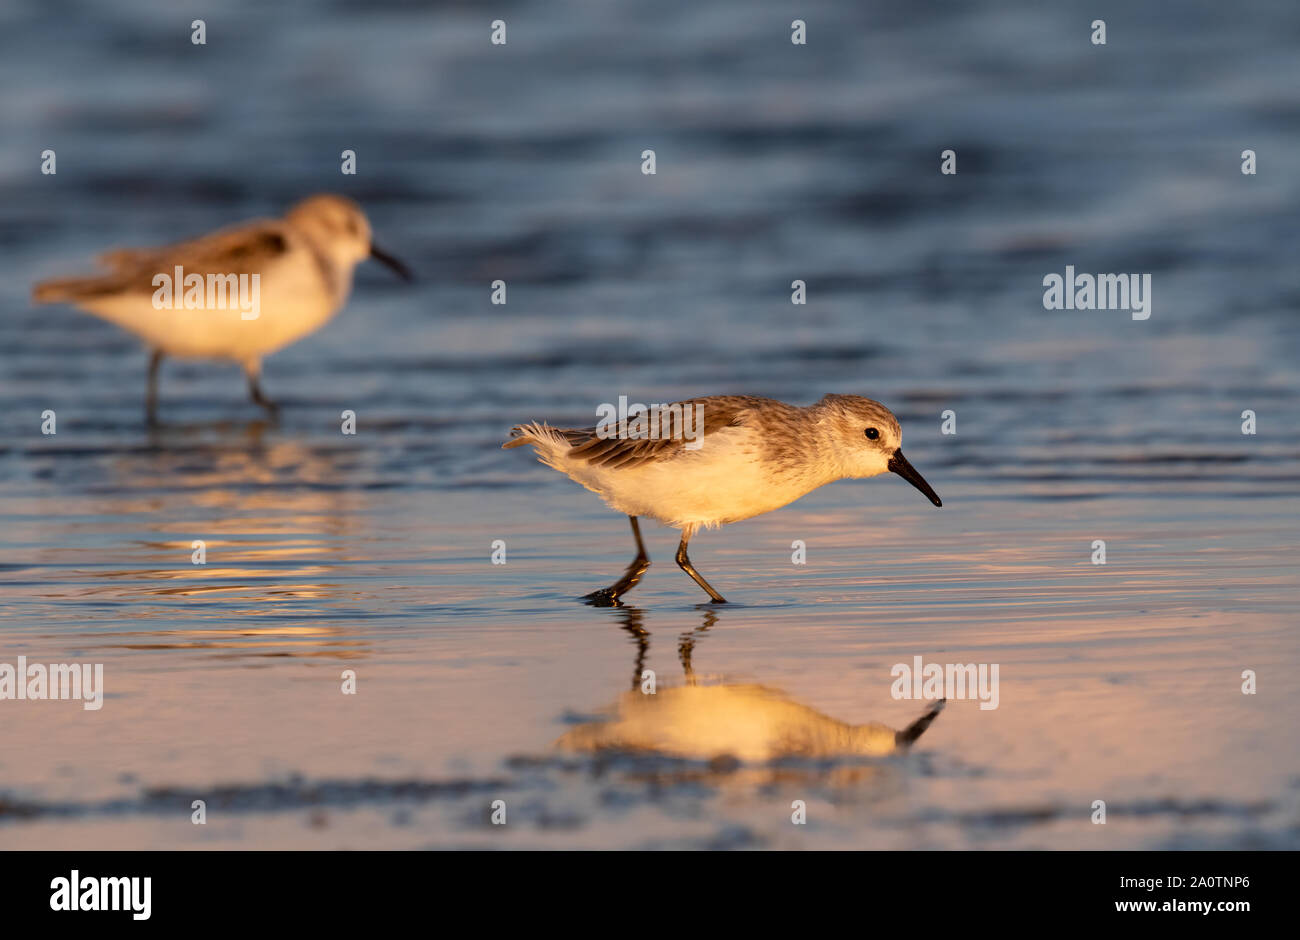 Les bécasseaux (Calidris mauri) alimentation en plumage d'hiver le long de la plage sur l'océan au coucher du soleil, Galveston, Texas, États-Unis. Banque D'Images